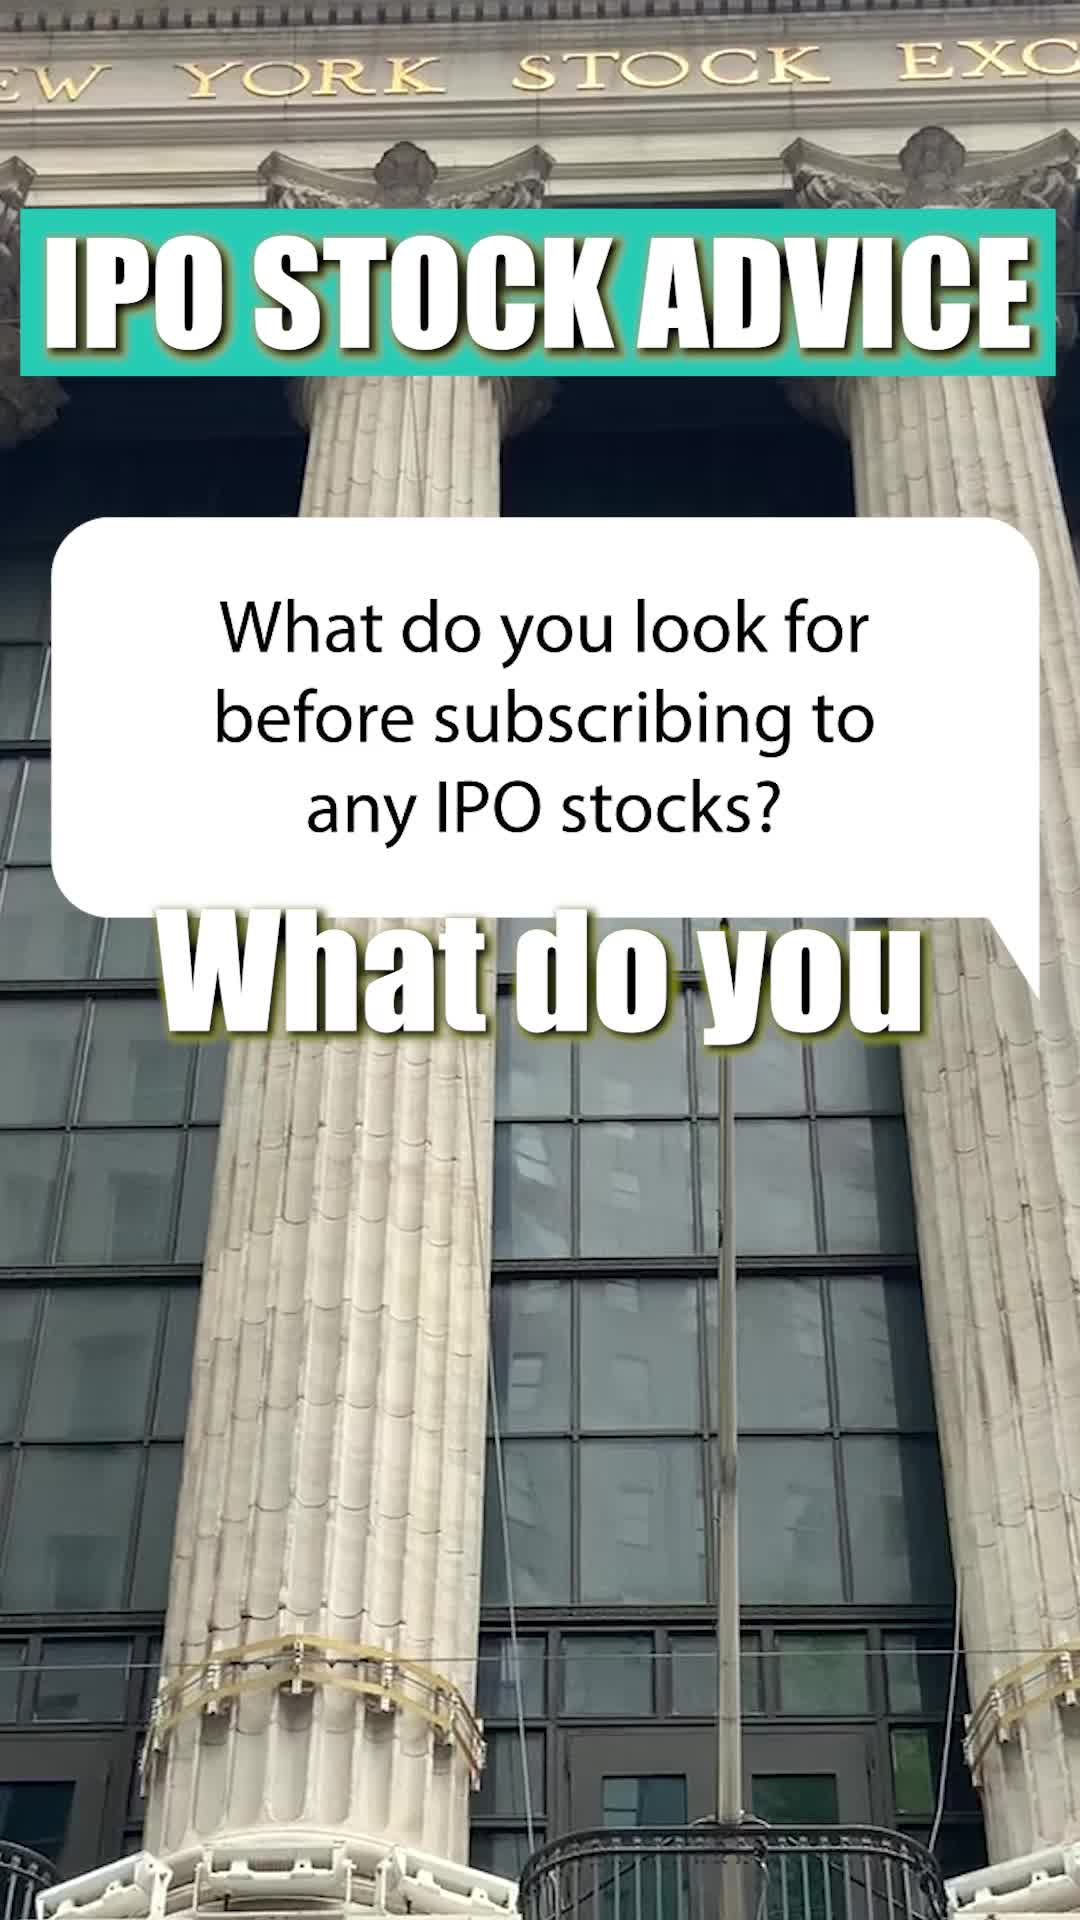 IPO 股票：如何挑選？